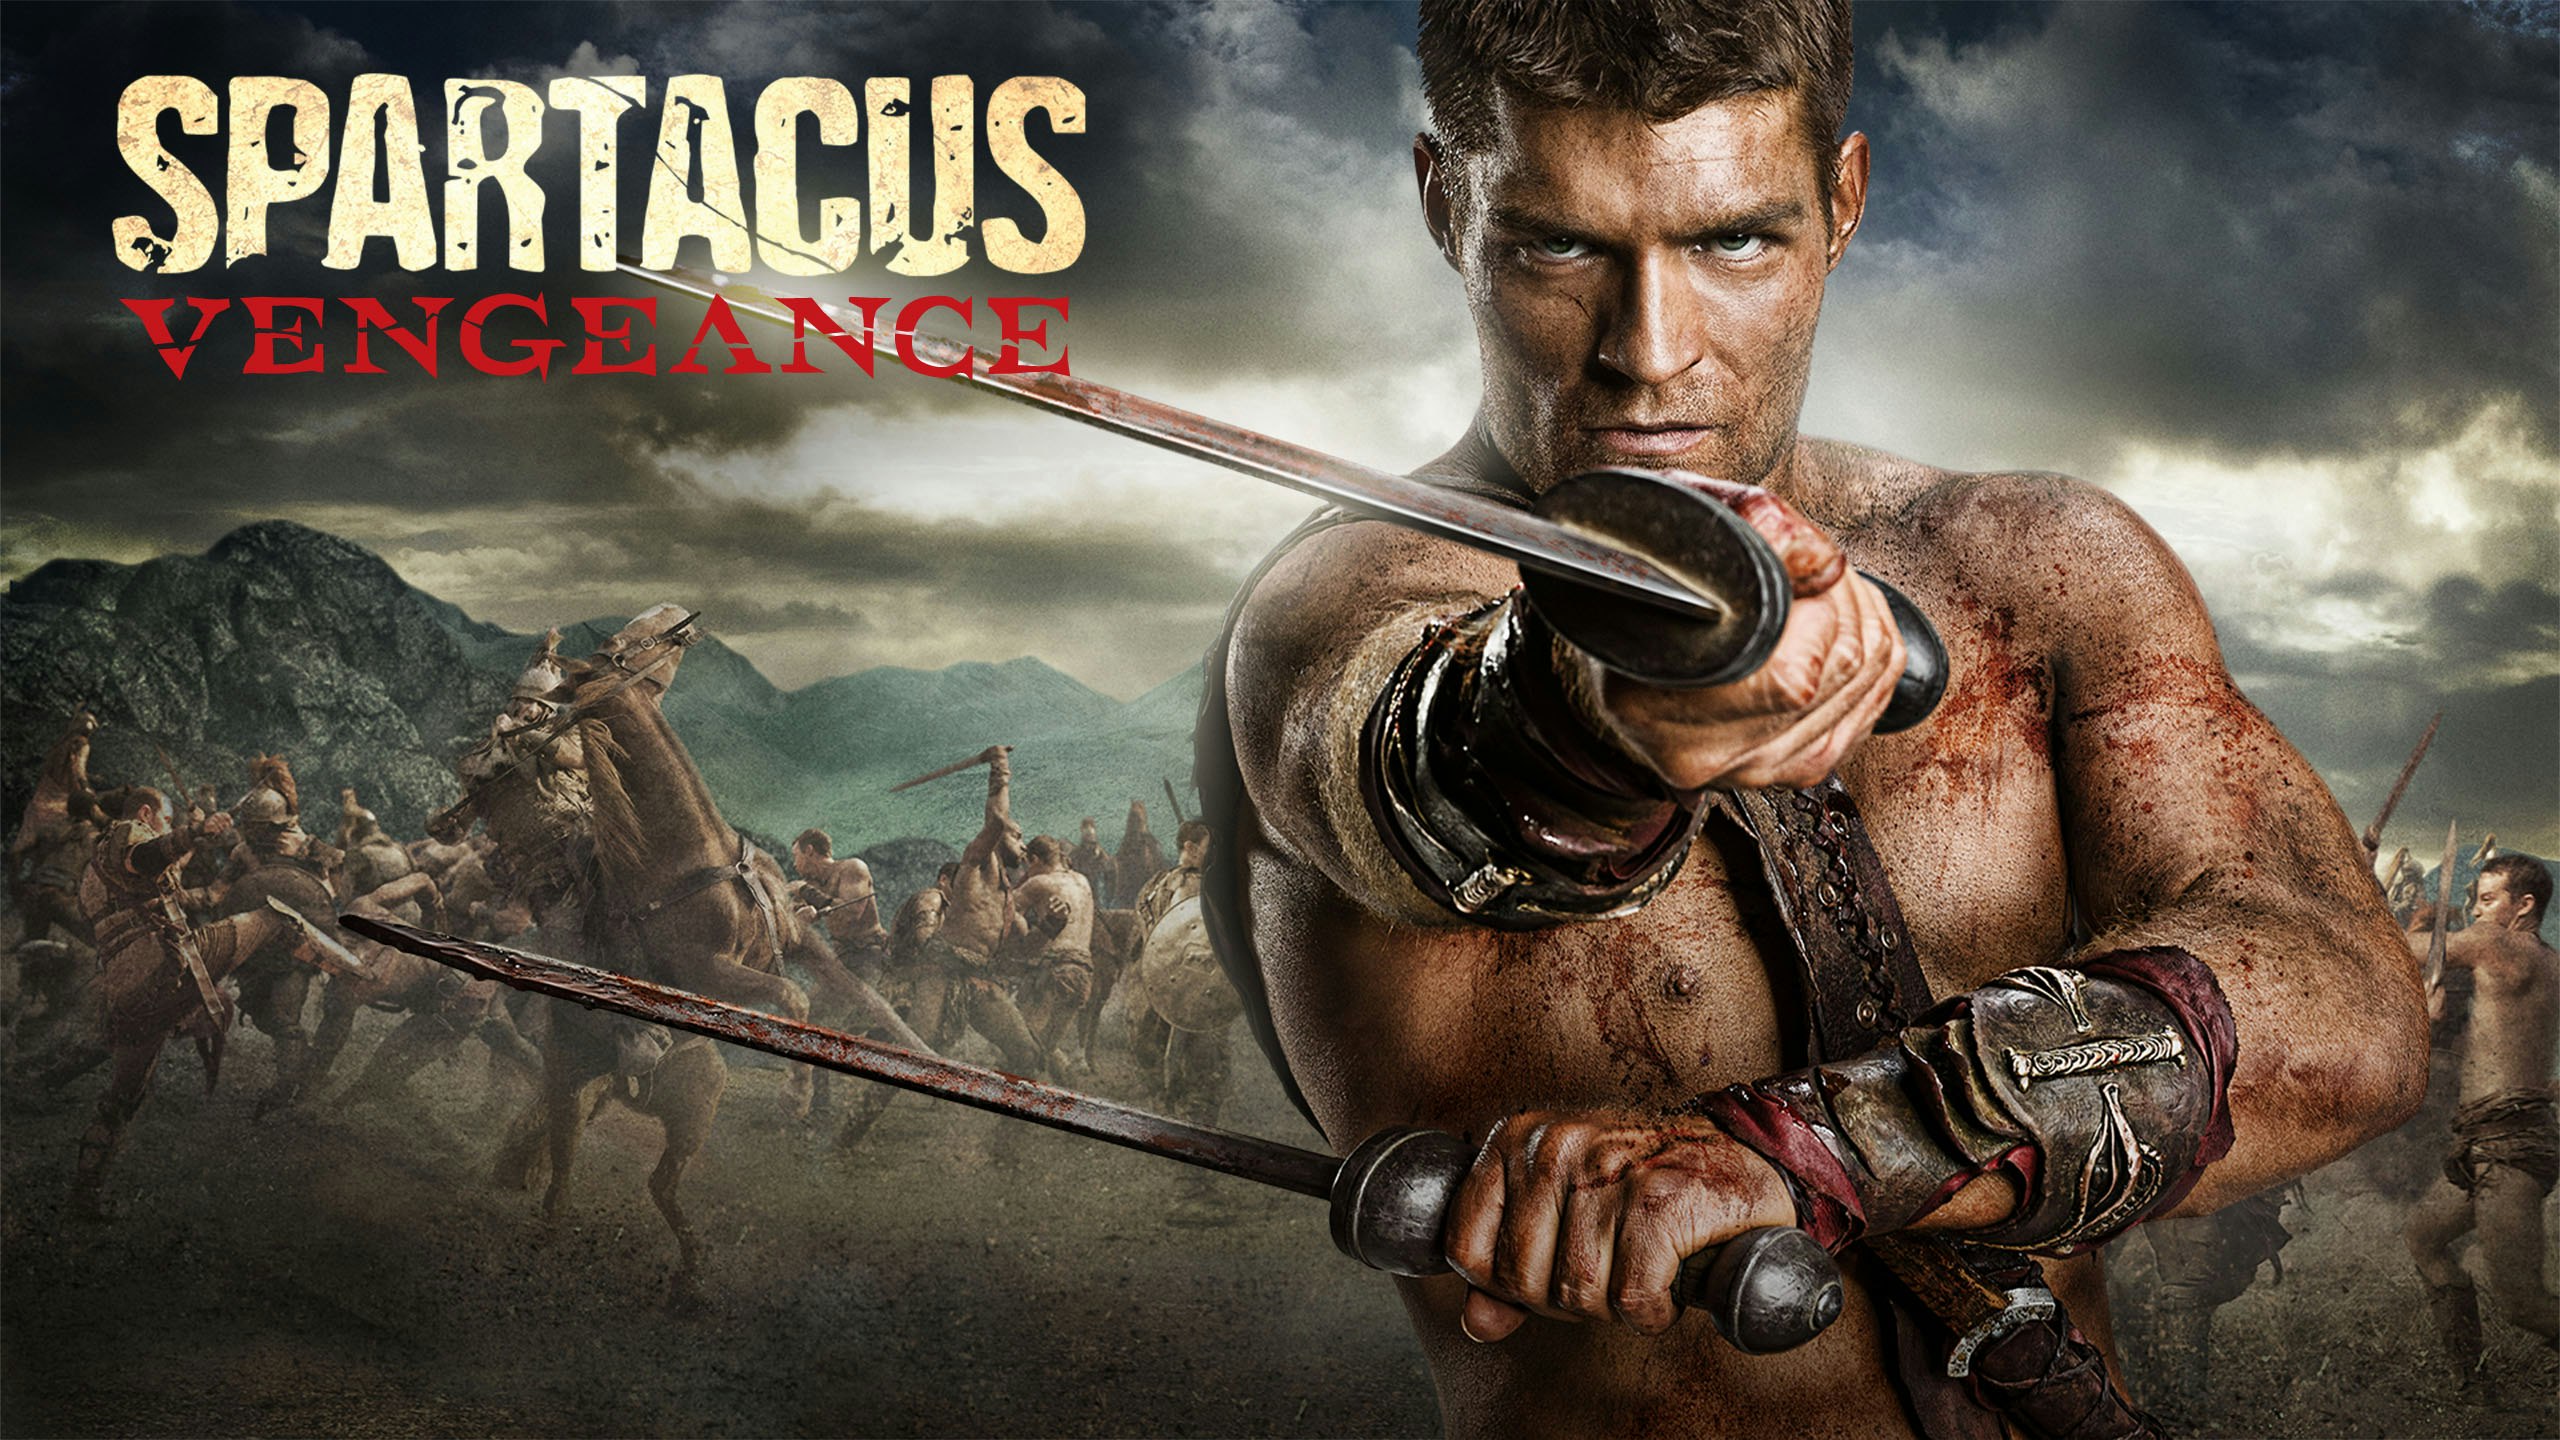 Spartacus Series Watch Online lynn creampie